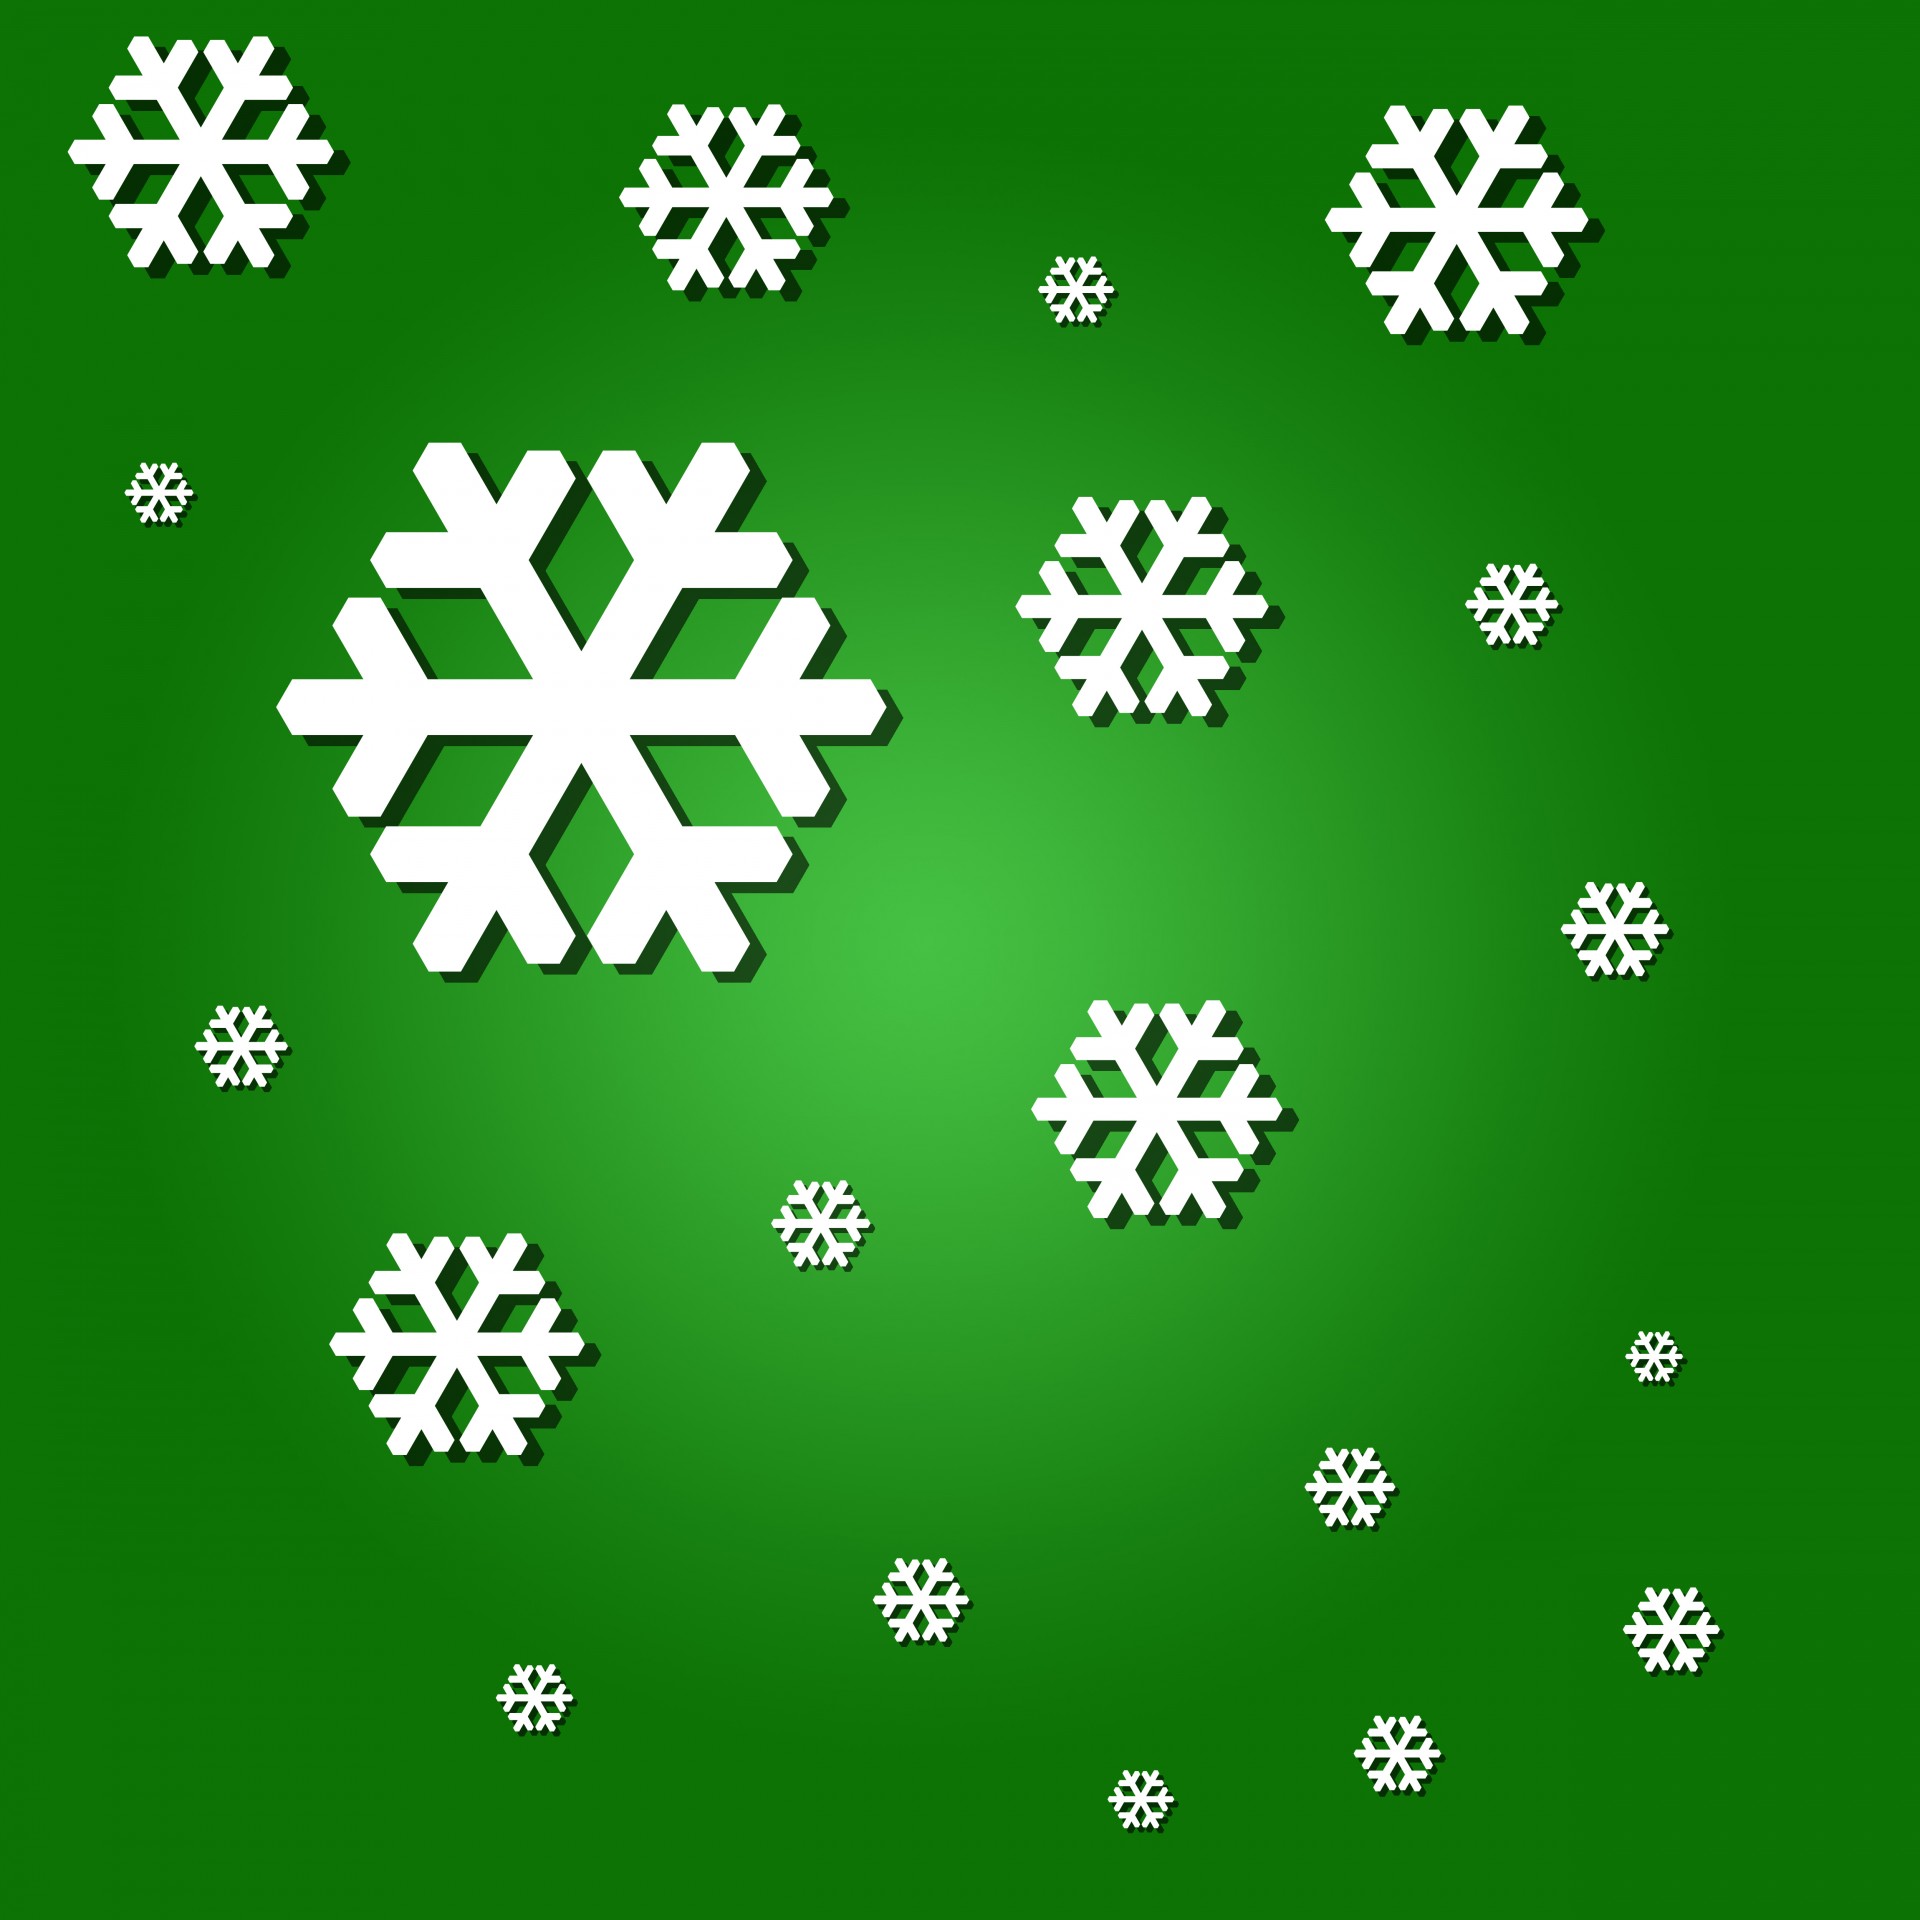 snow snowflakes illustration free photo